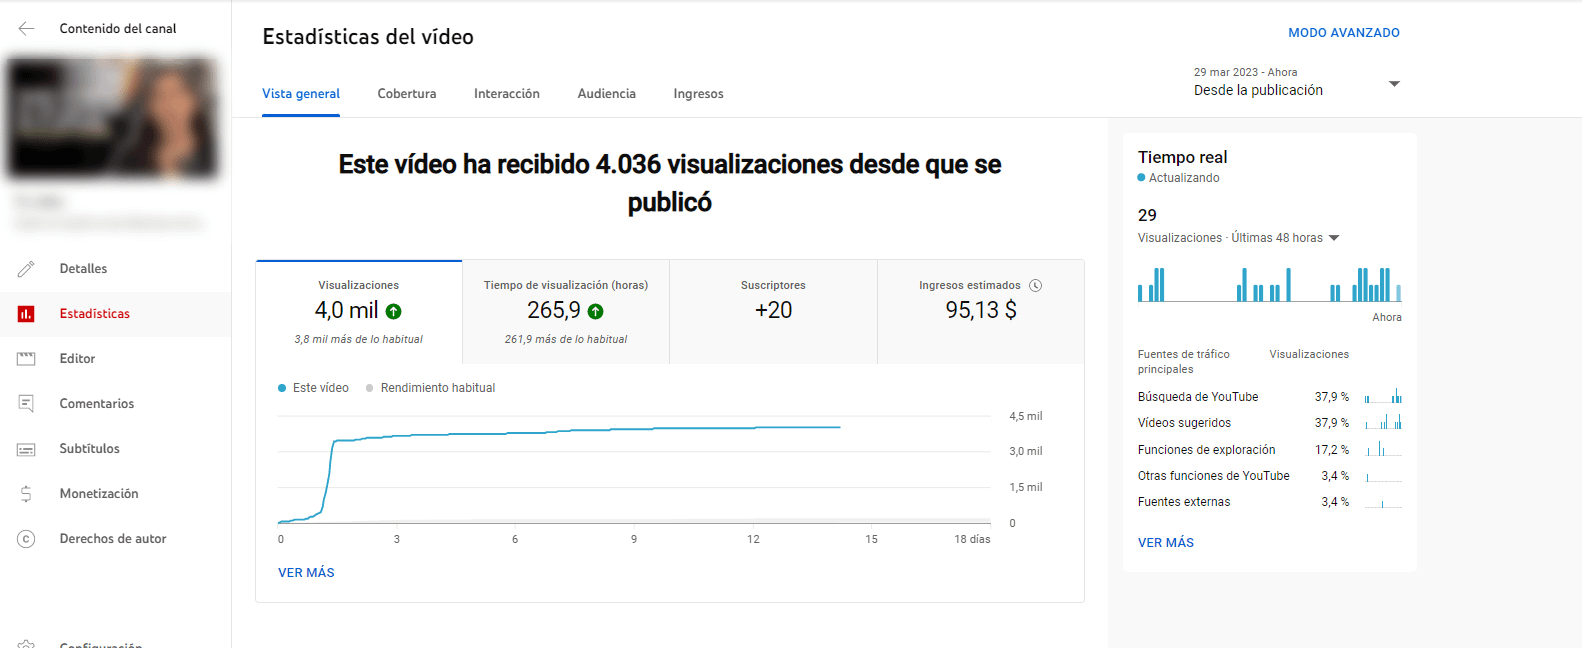 cuanto paga youtube mexico pesos mexicanos 2023 3